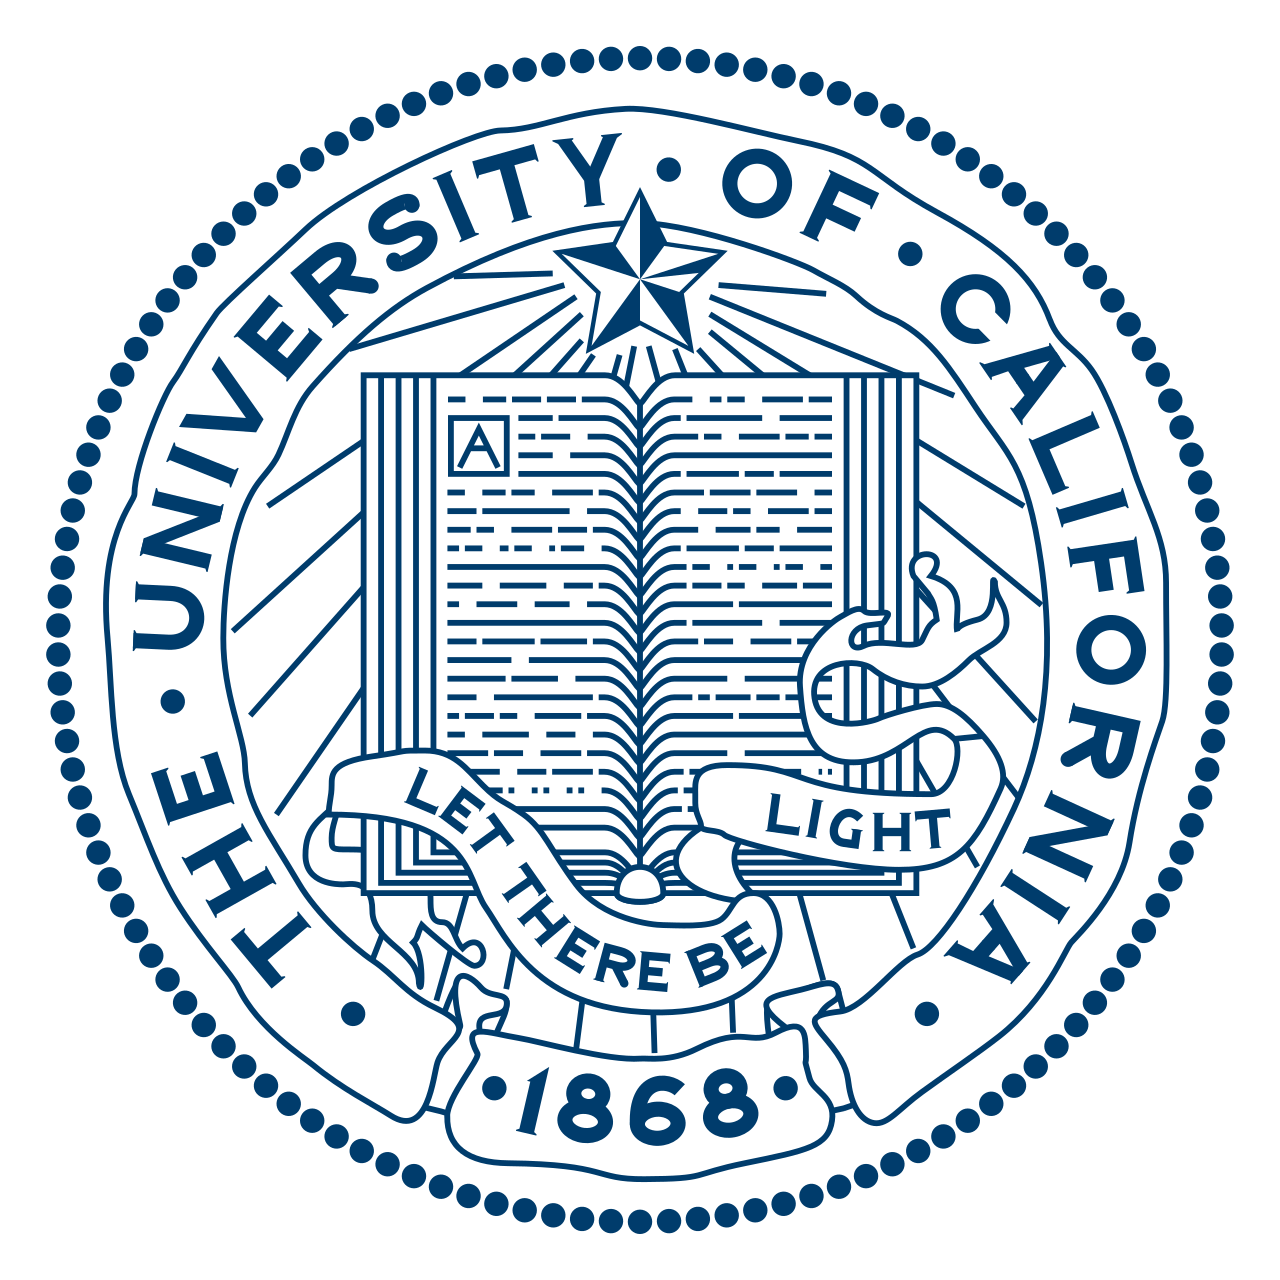 UCSC - University of California, Santa Cruz - Калифорнийский университет в Санта-Крузе - Lick Observatory - Обсерватория Лики - Ликская обсерватория